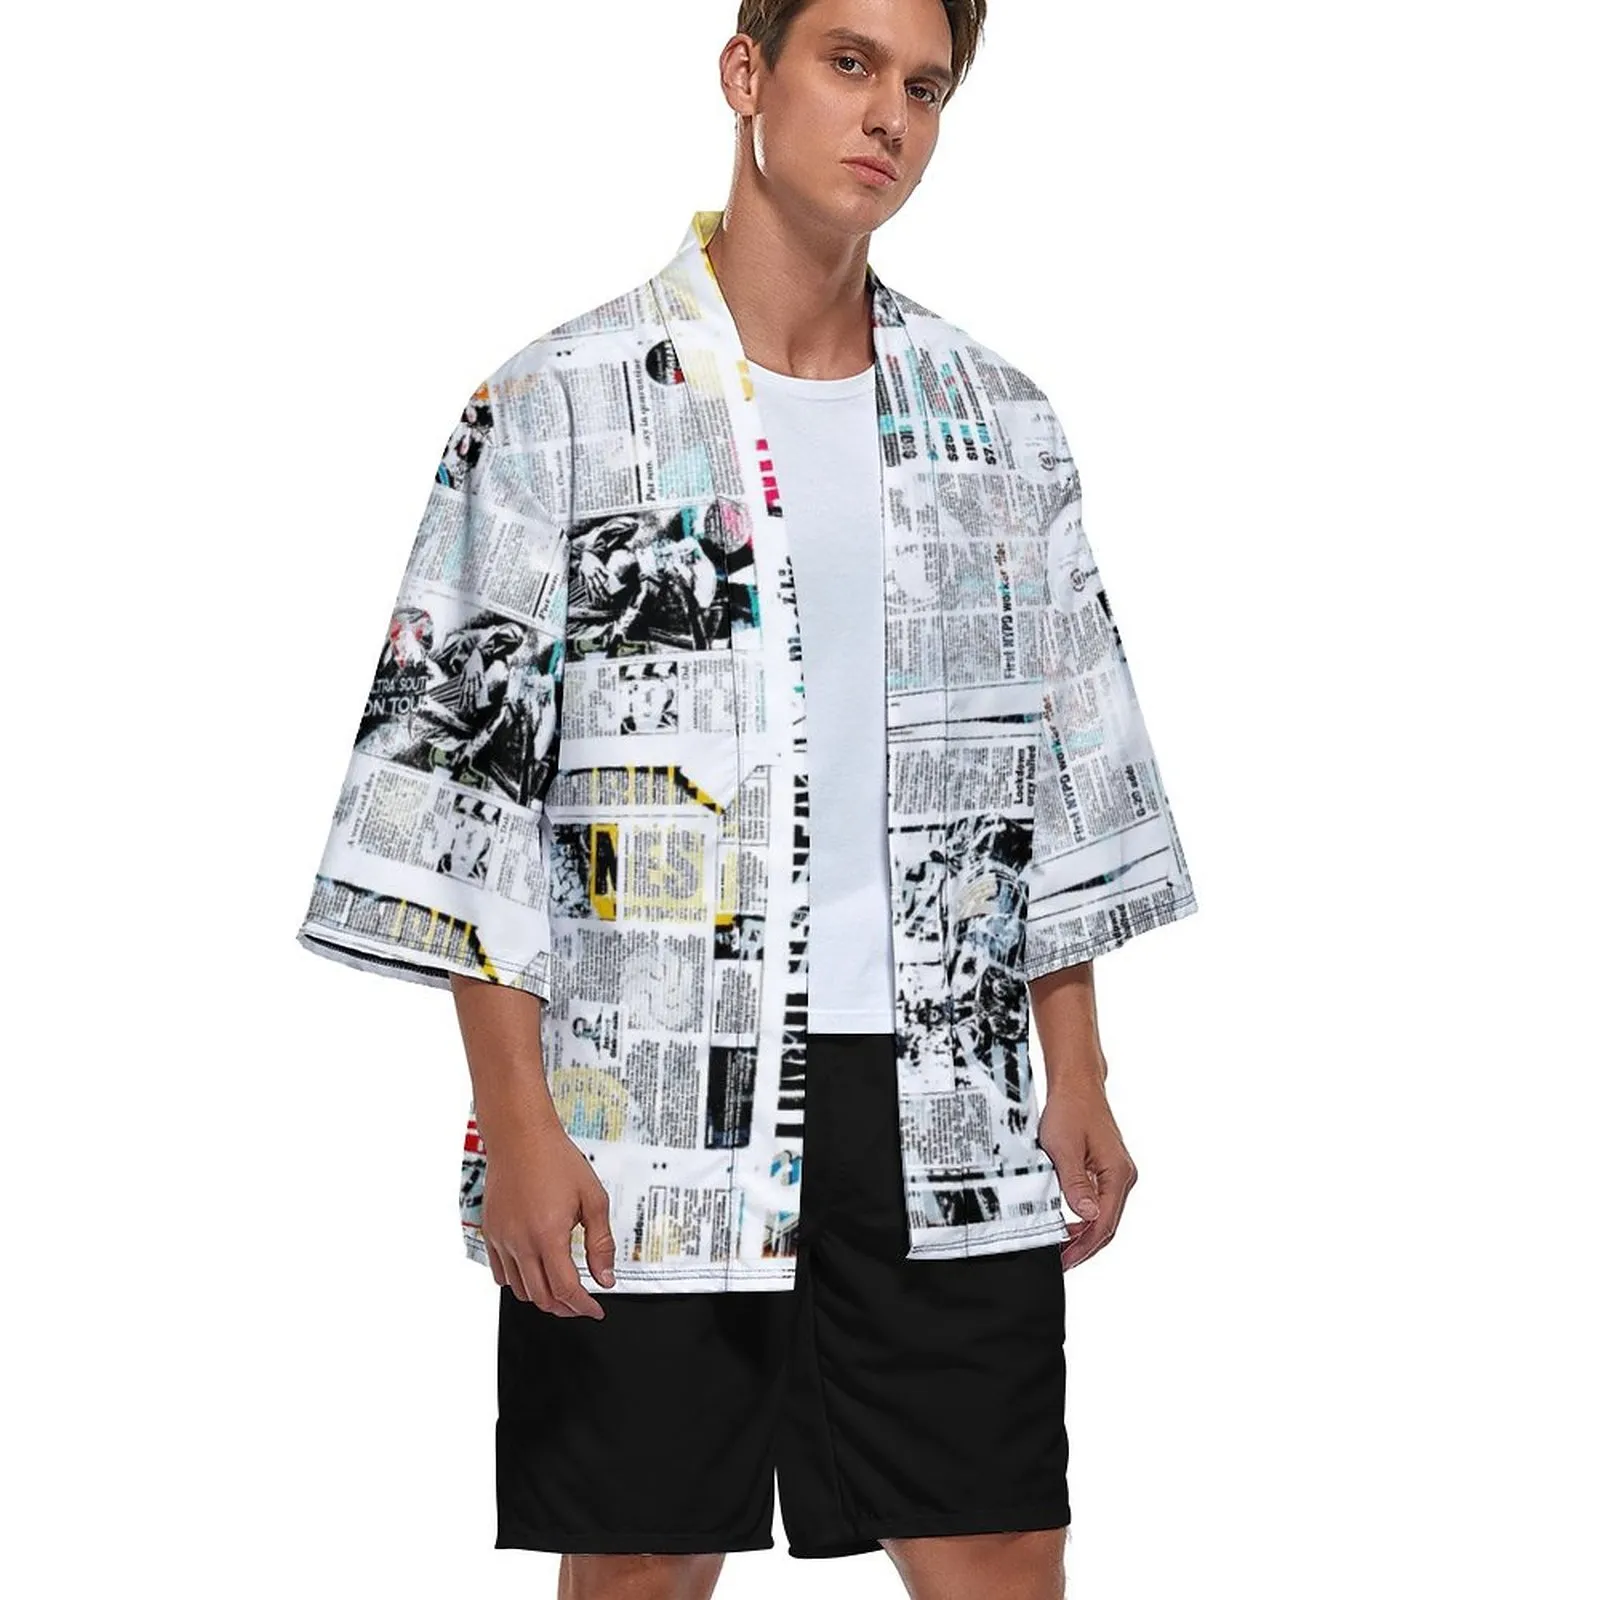 Anpassade mäns kimono cardigan kappa svalt och bekvämt mode sju-punkts ärm framkardigan jacka knappfri lös 95% polyester +5% spandex 221g färgkontrast